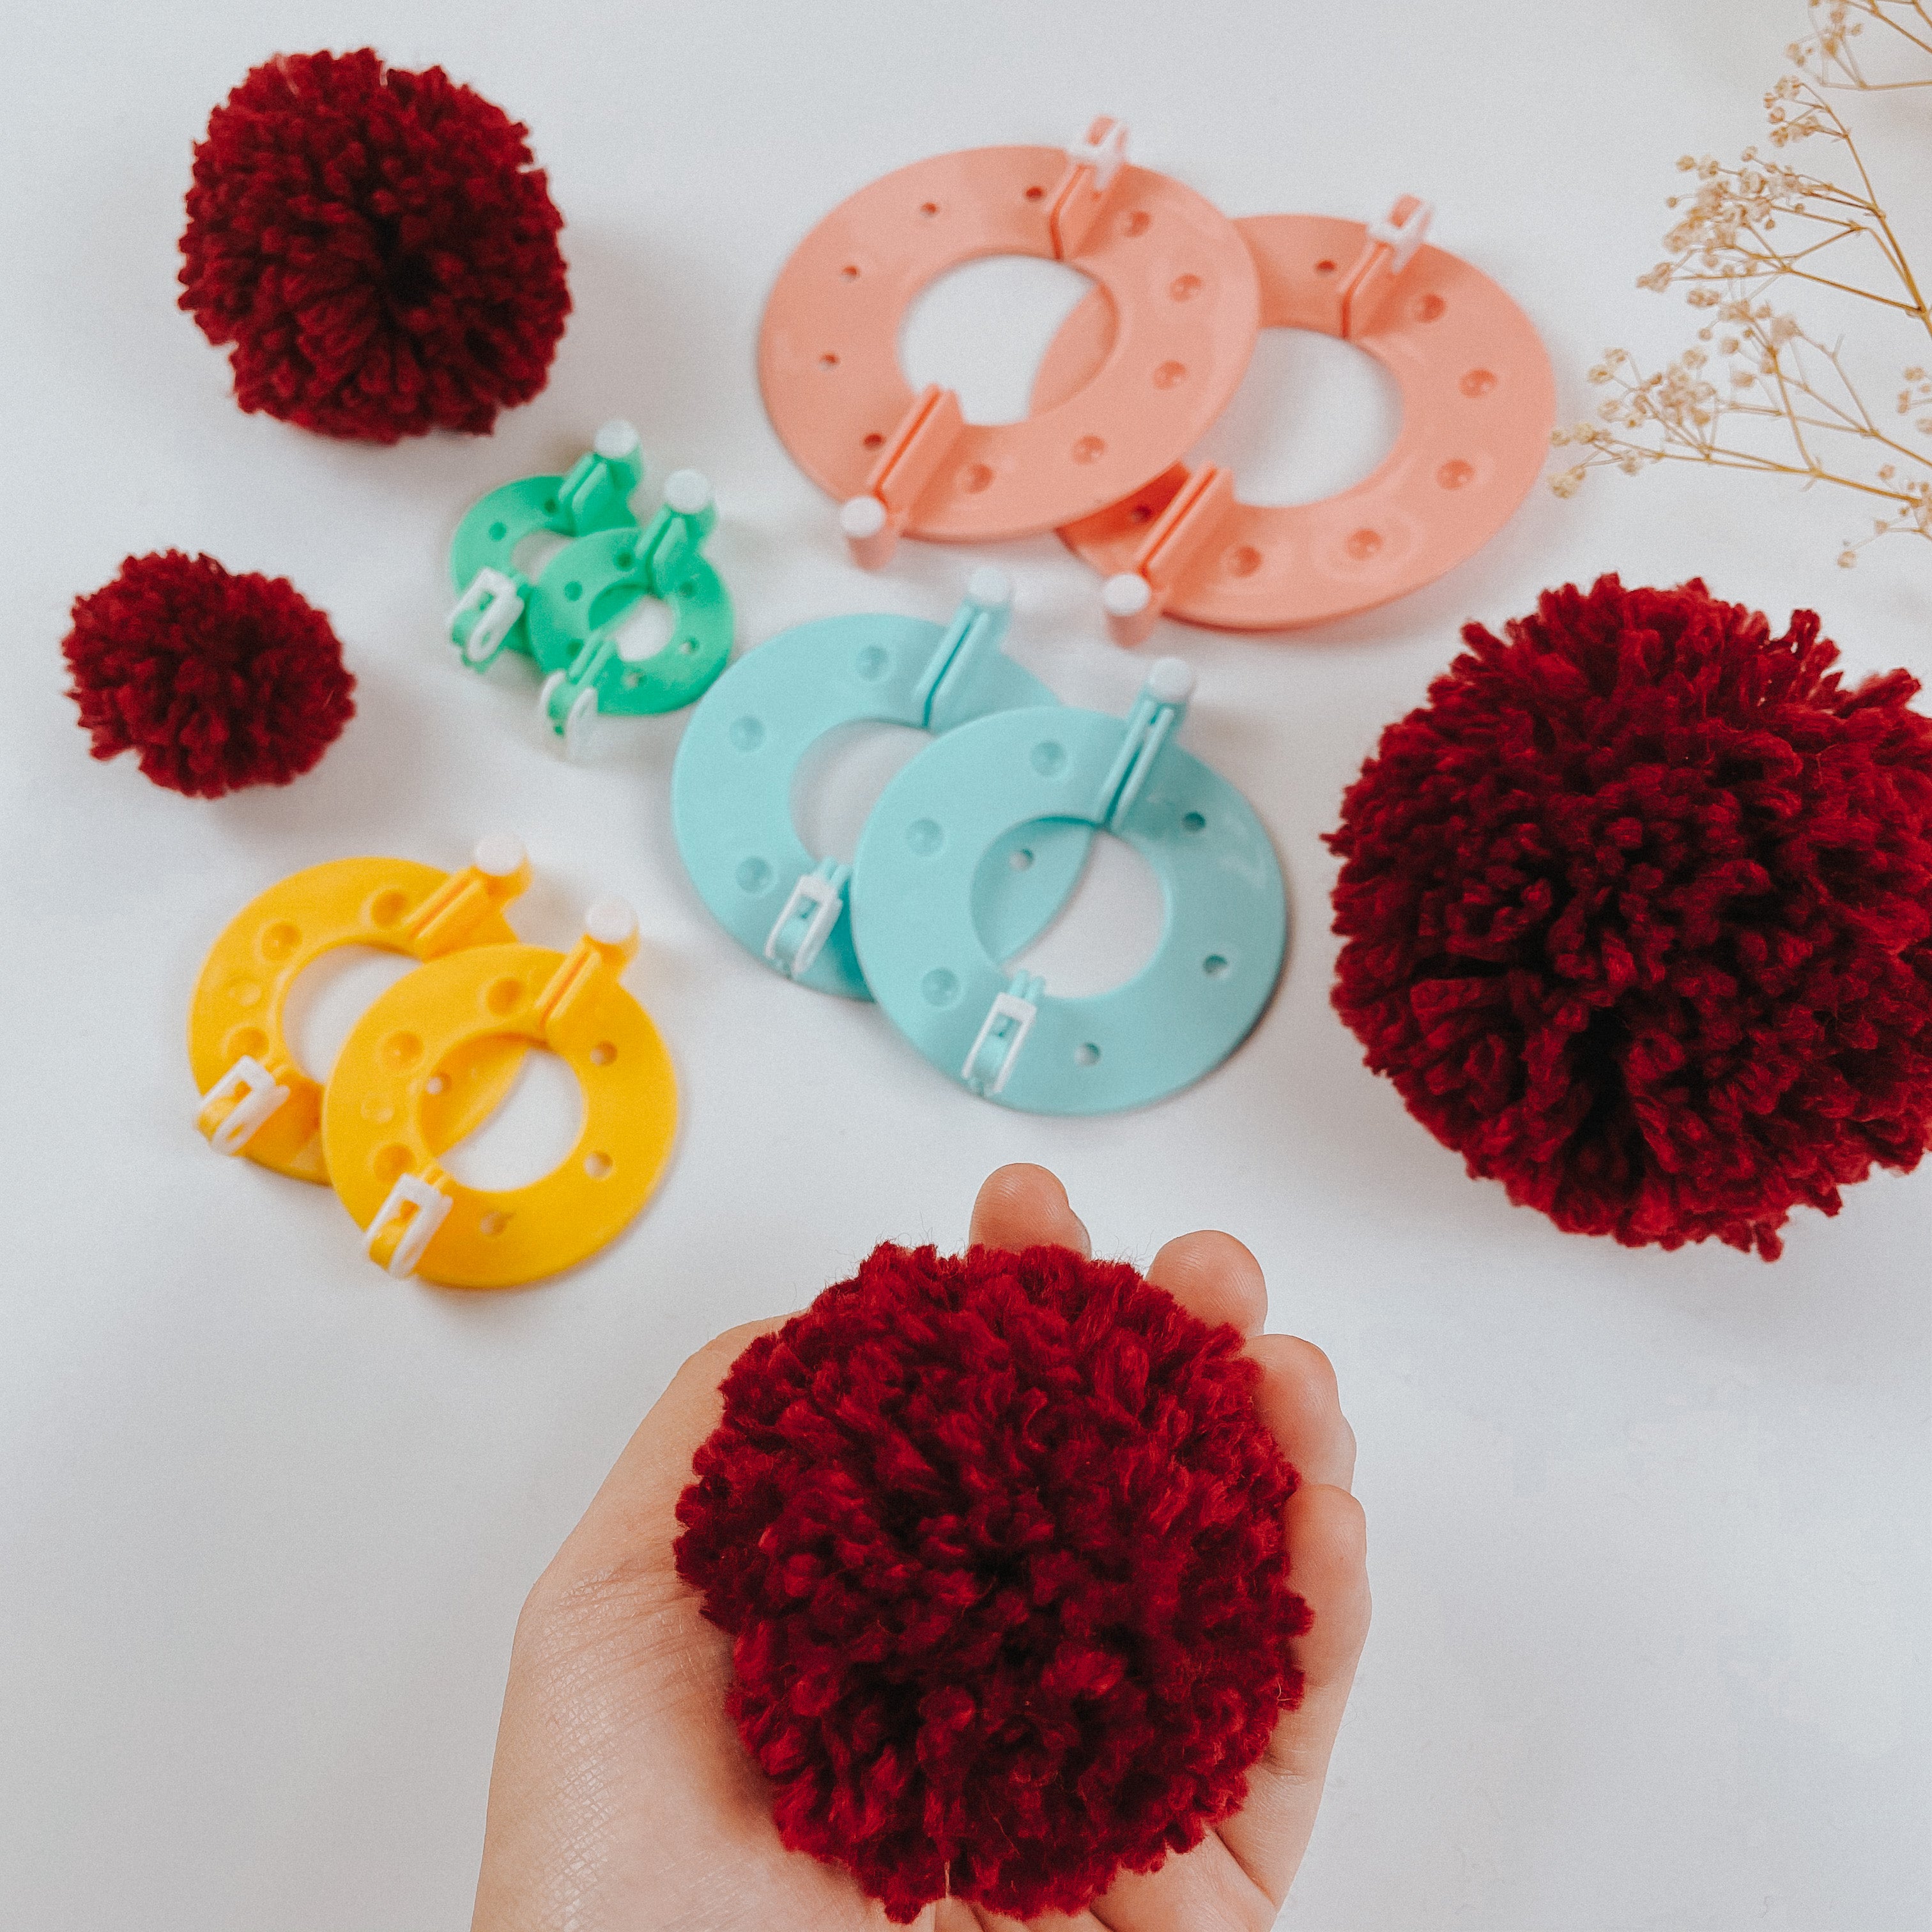 Large Pom Pom Maker for Yarn - 4 Sizes of Pompom Maker for Yarn Decoration  DIY Crafts 